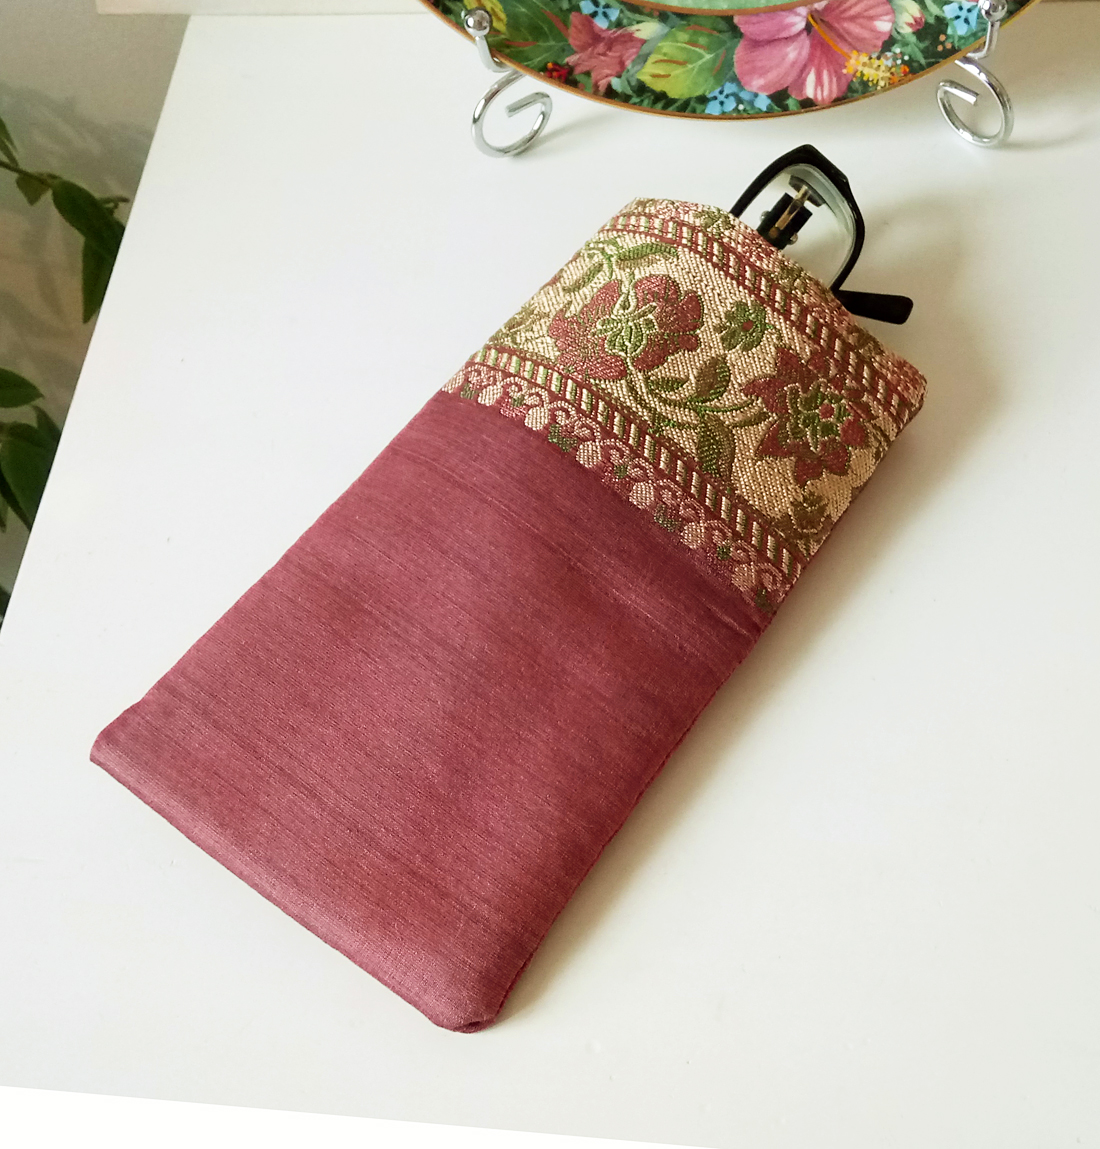 Etui à lunettes ou téléphone mobile, molletonné 9,5 x 17,5 cm tissu de soie  rose ancien brocart floral intérieur coton anglais - Ann M. Creation Bijoux  et objets textile